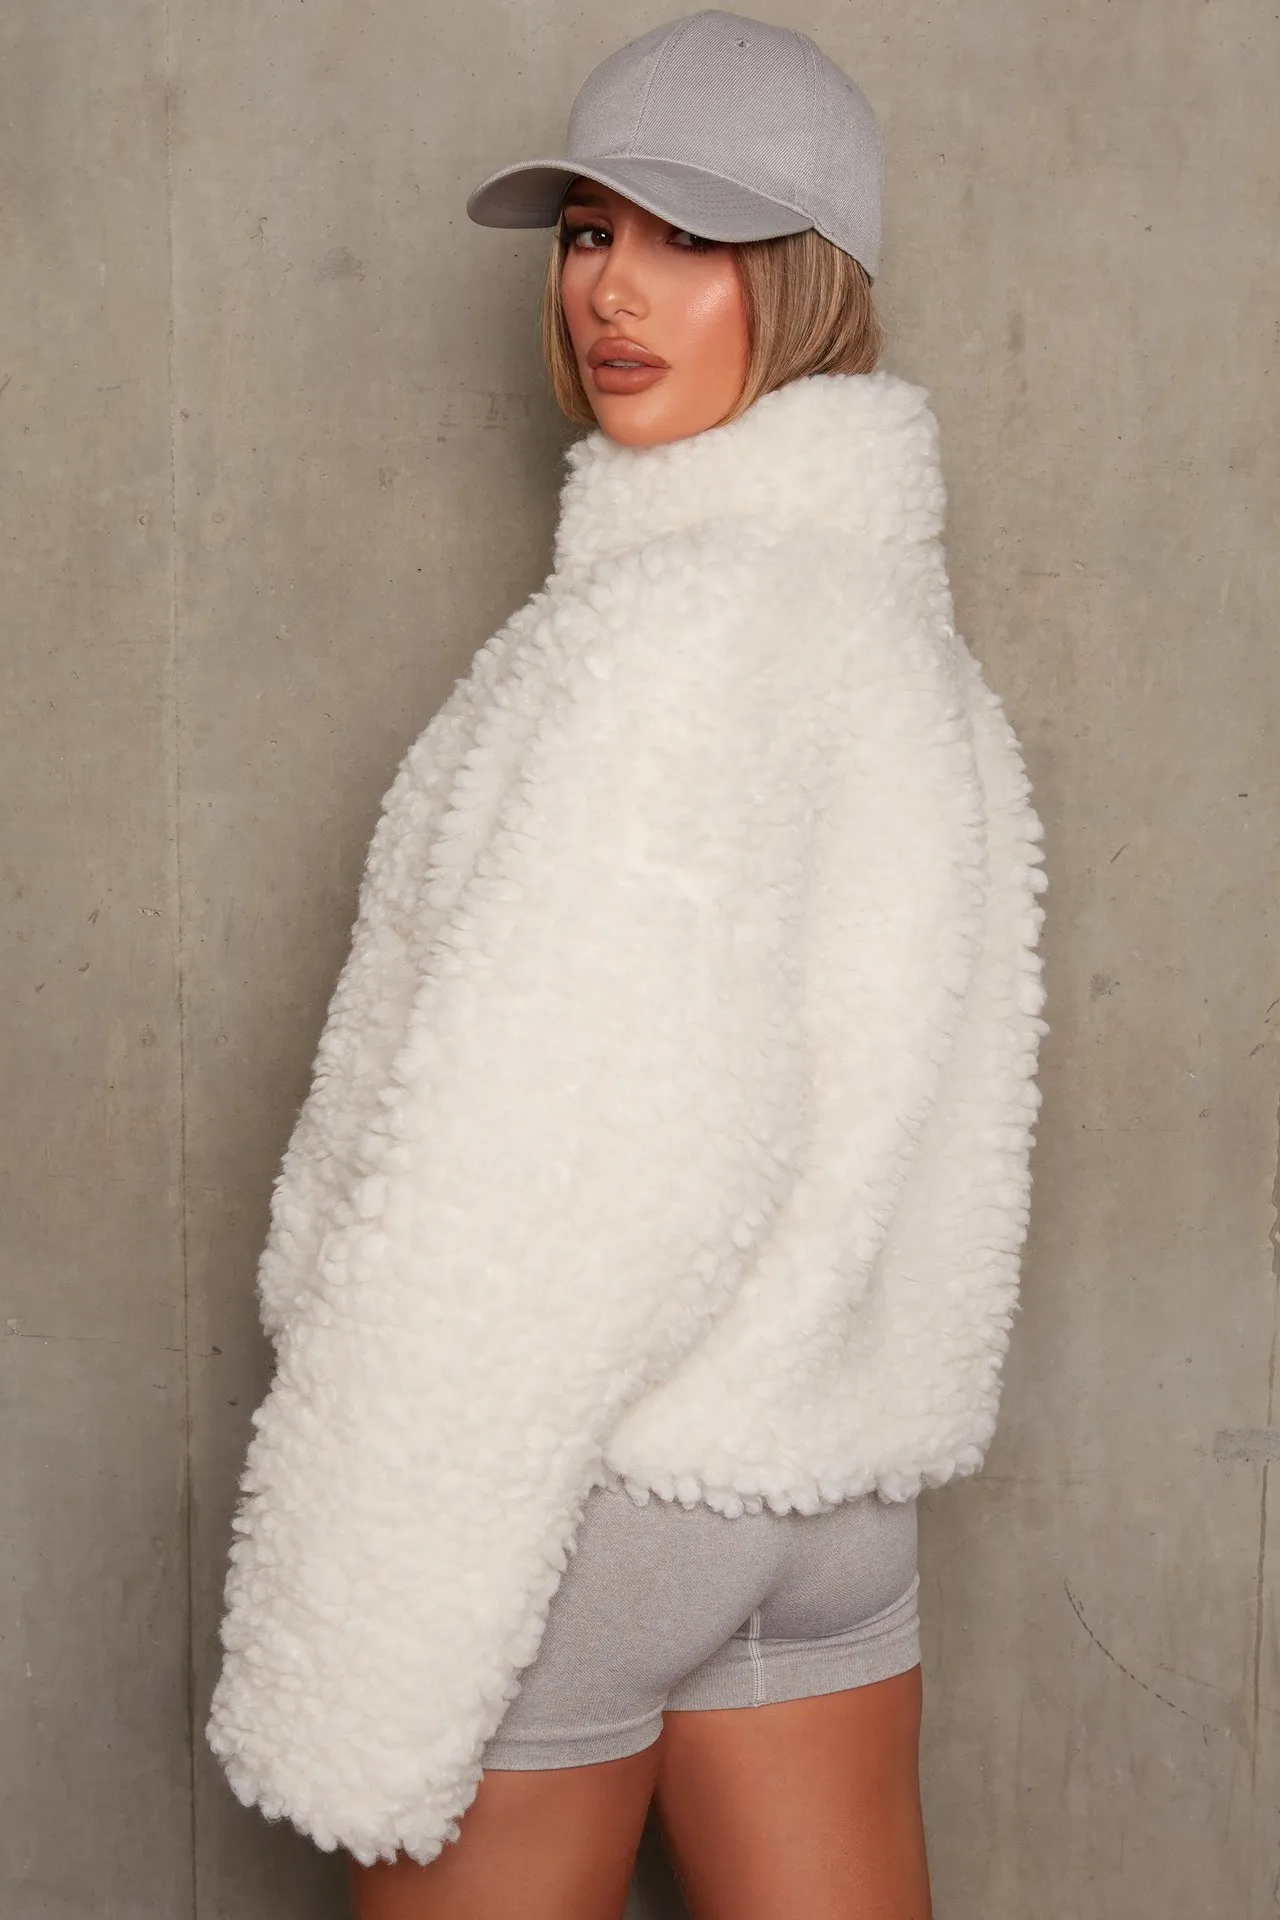 Casaco de inverno mulheres casaco mulheres roupas moda pelúcia cardigan casaco curto cordeiro casaco de lã mulheres 210422